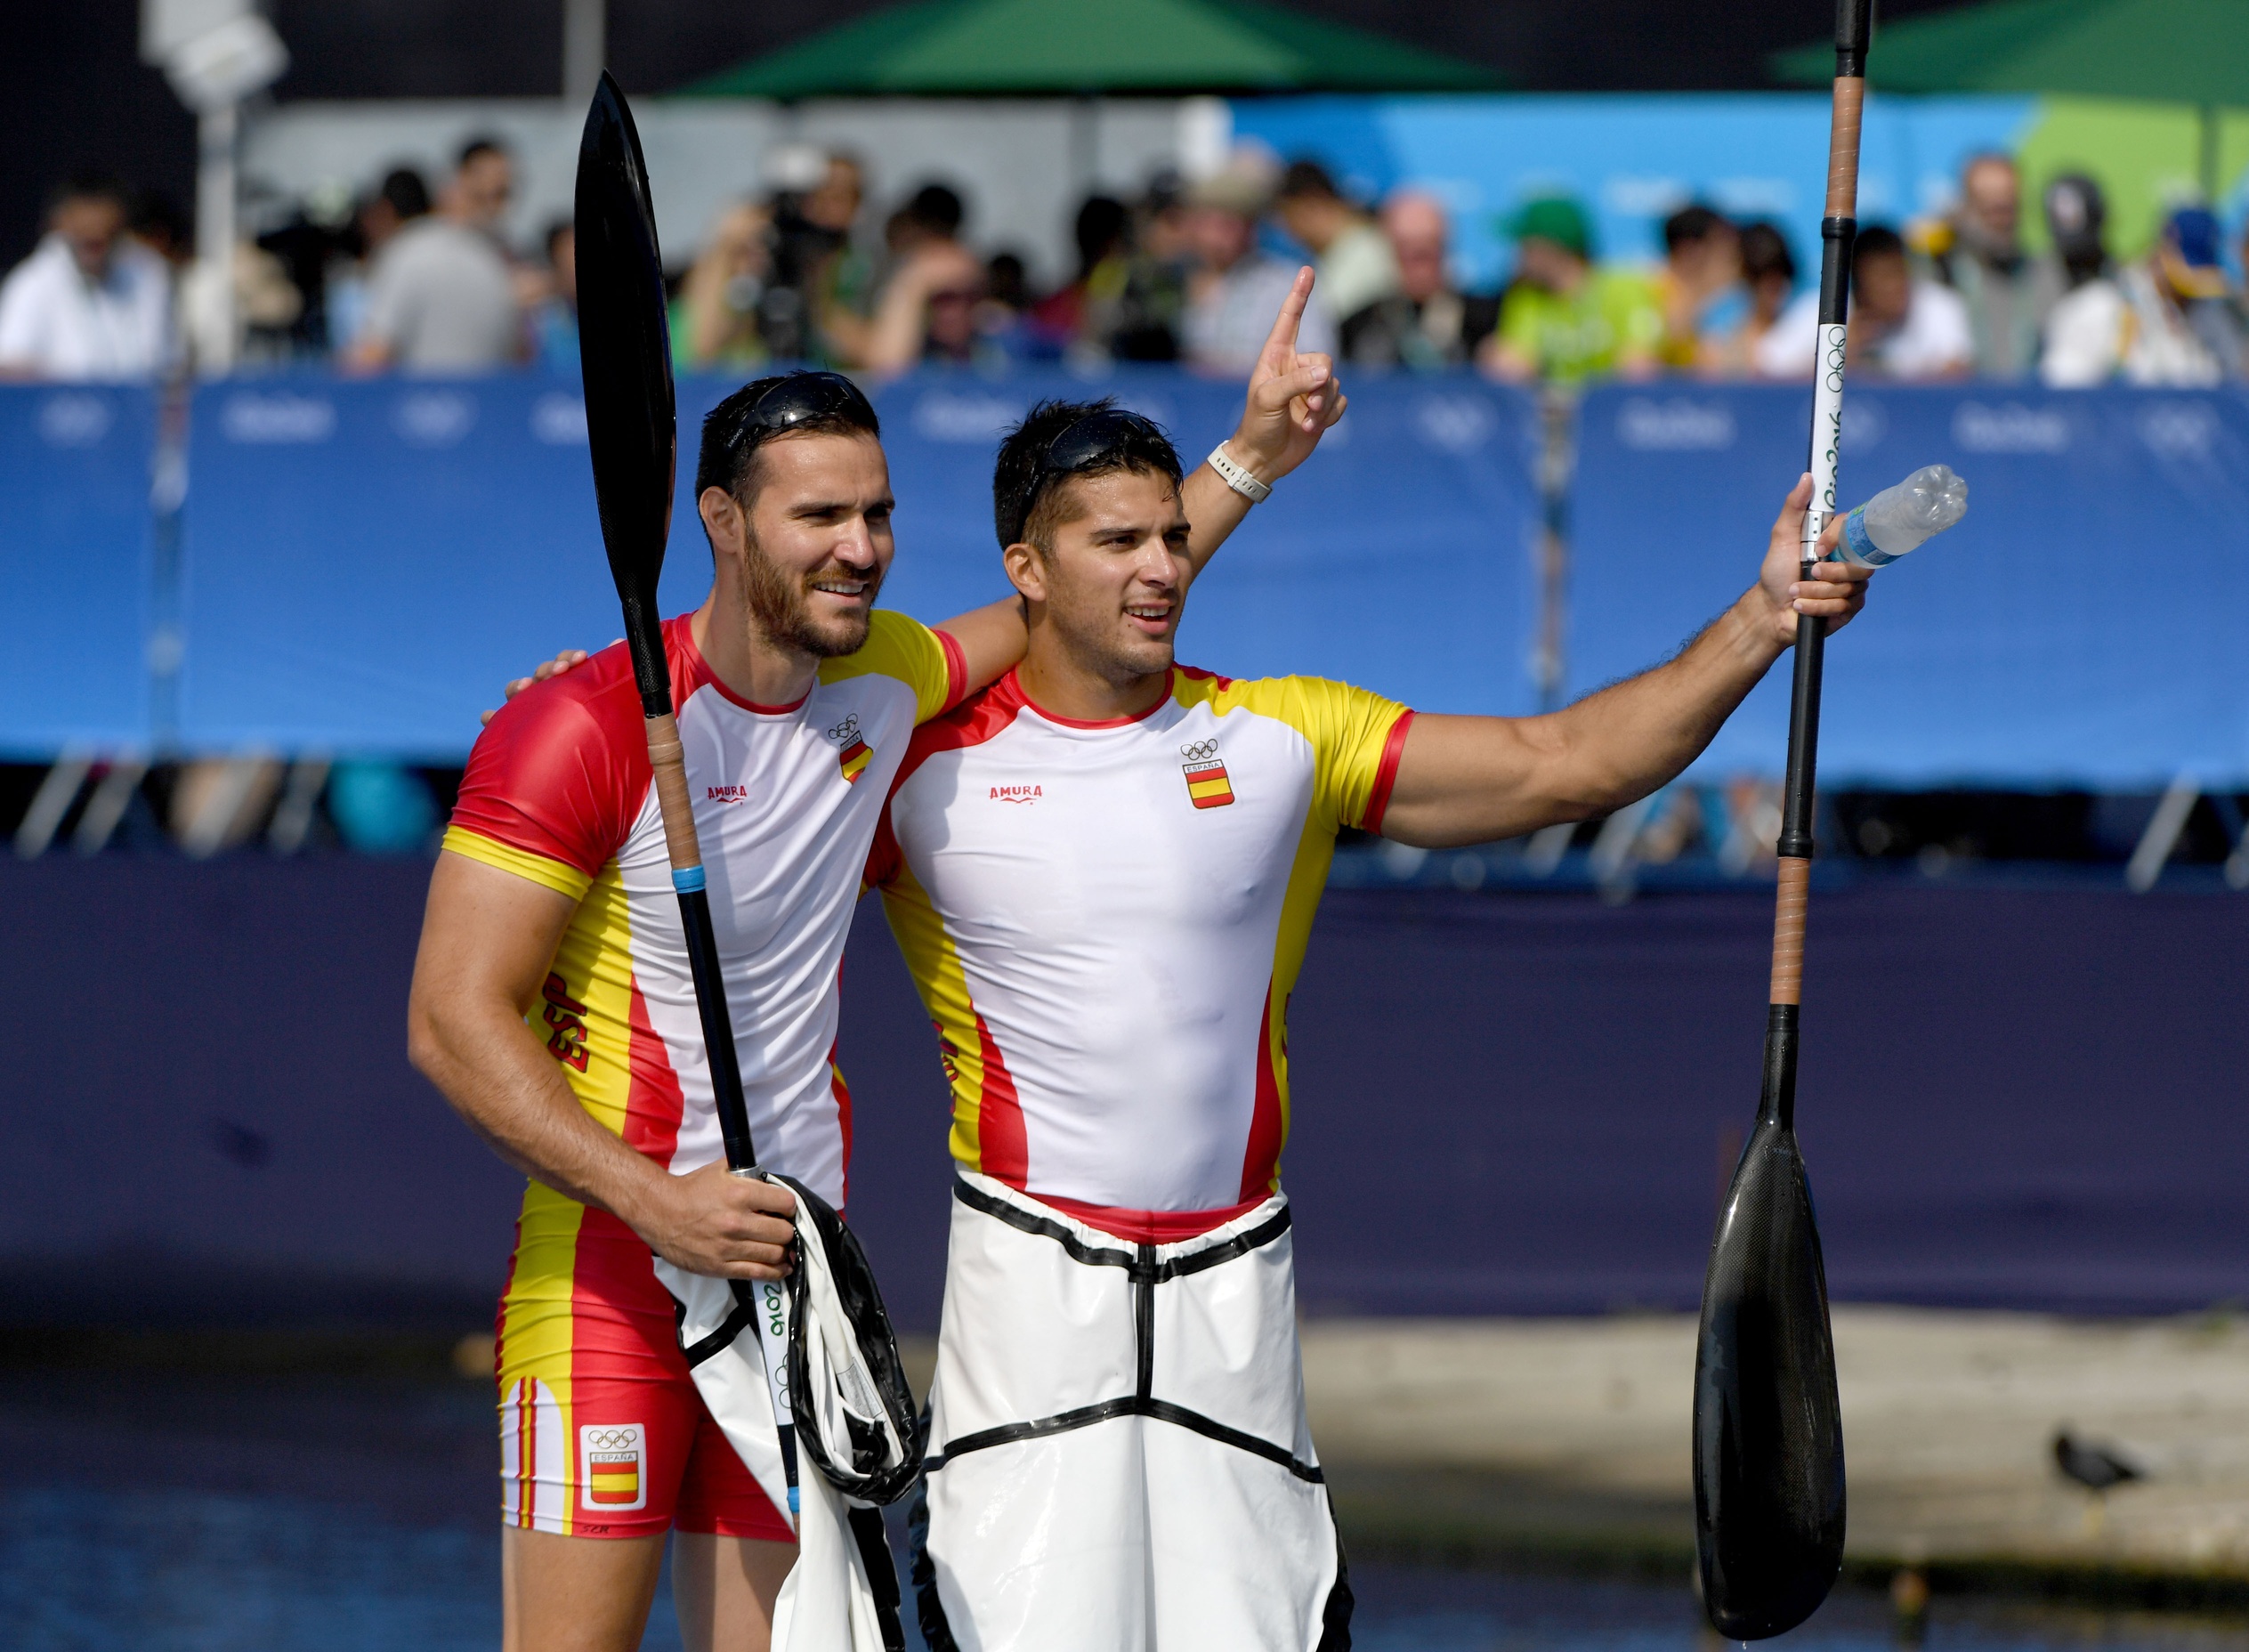 [高清組圖]男子雙人皮艇200米決賽 西班牙奪金